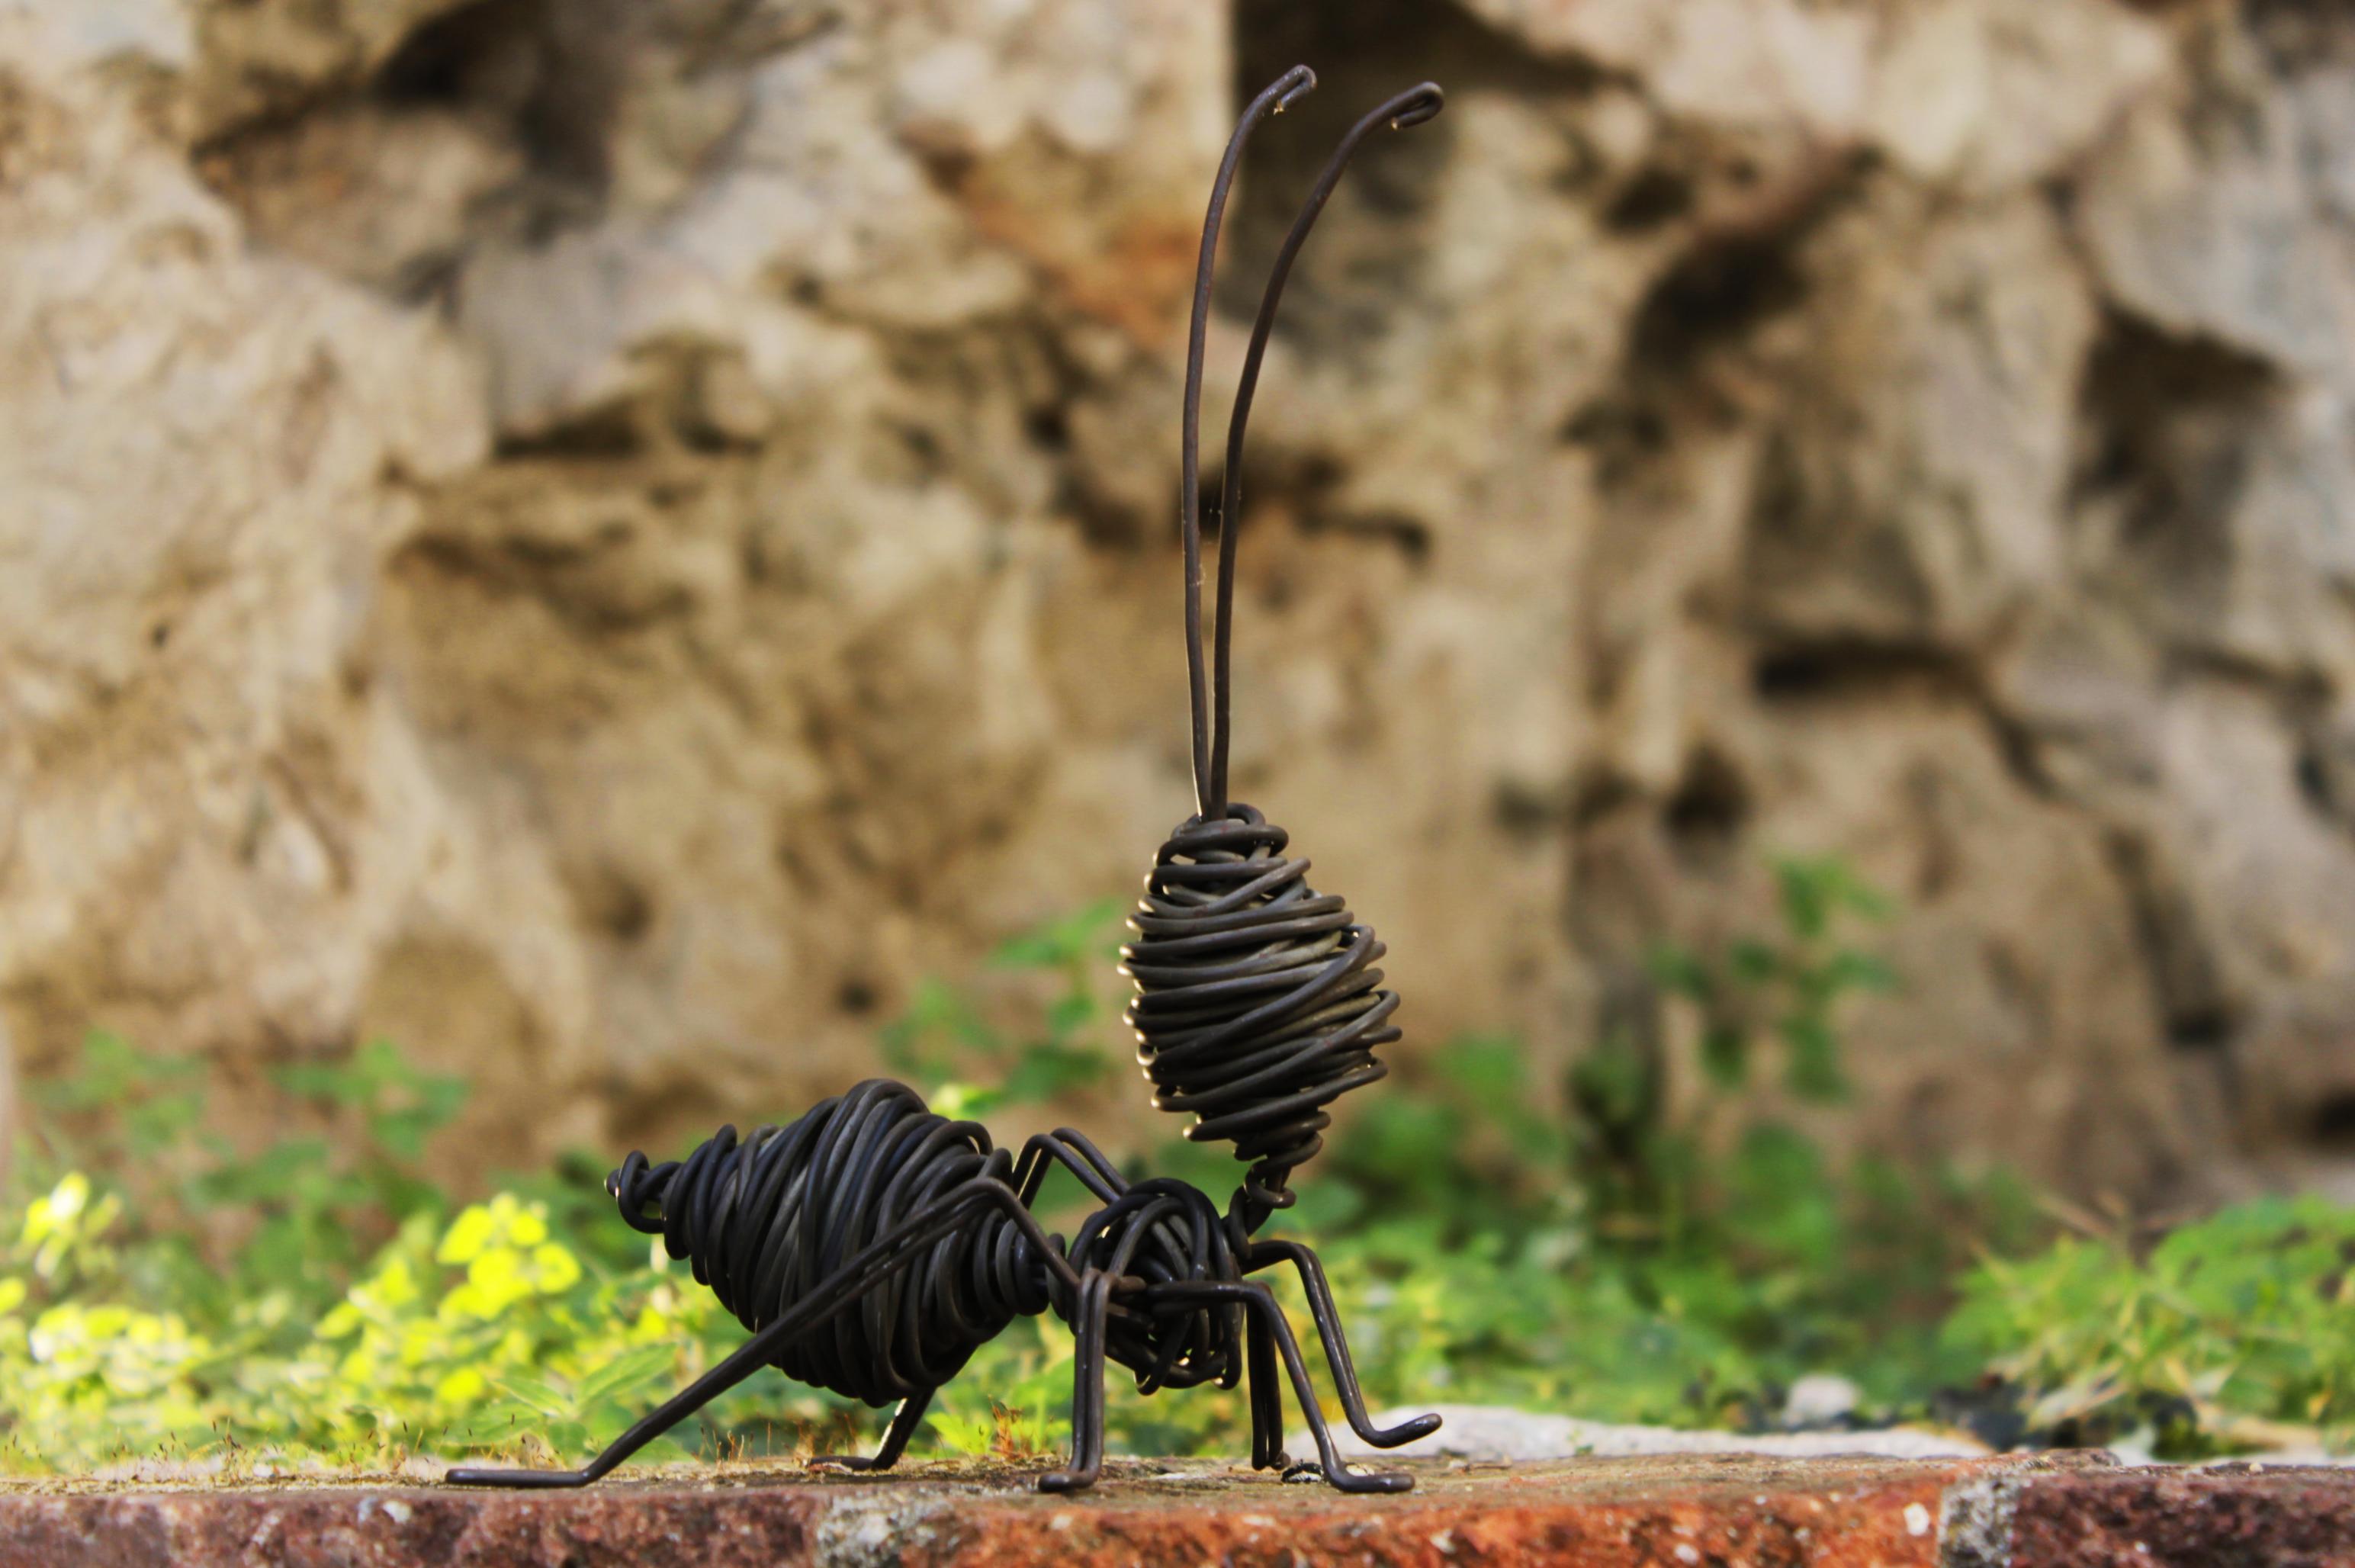 Hormiga L - 21st Century, Contemporary, Figurative Sculpture, Iron, Ant